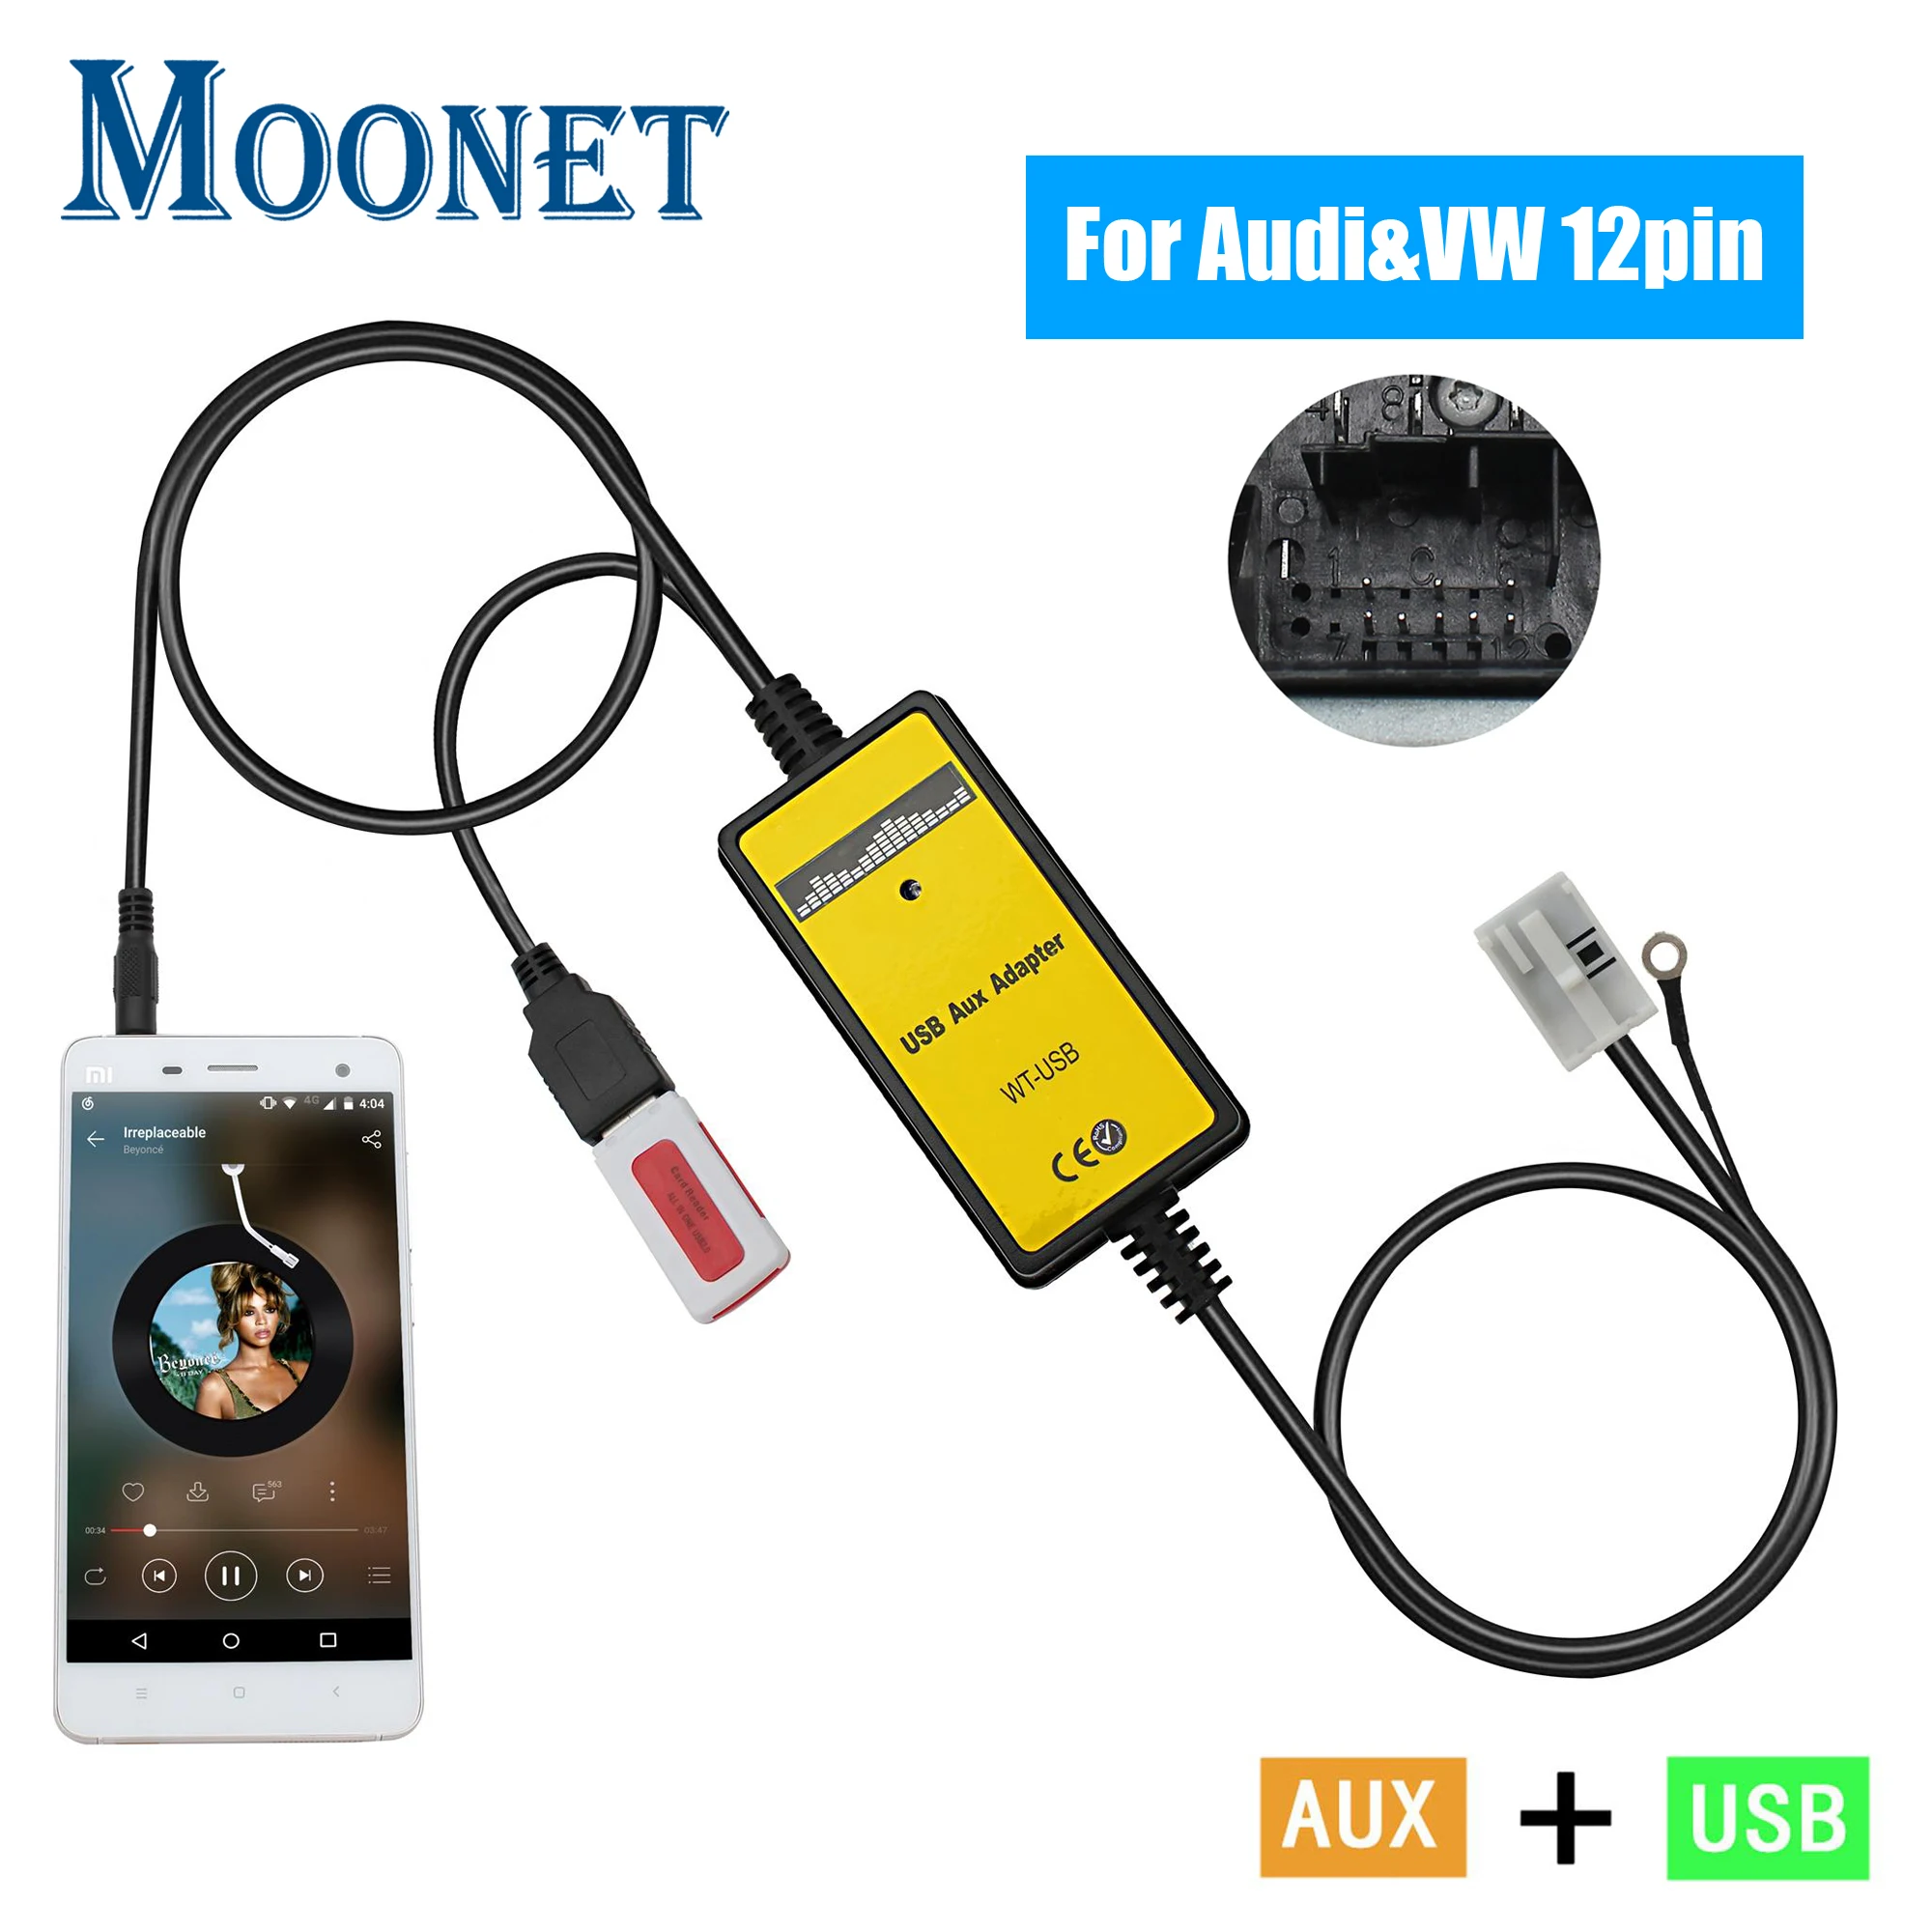 Автомобильный аудио USB AUX адаптер Moonet 3,5 мм AUX вход СD зарядное устройство для Audi и Volkswagen Tiguan Touran T5 Golf Passat QX091